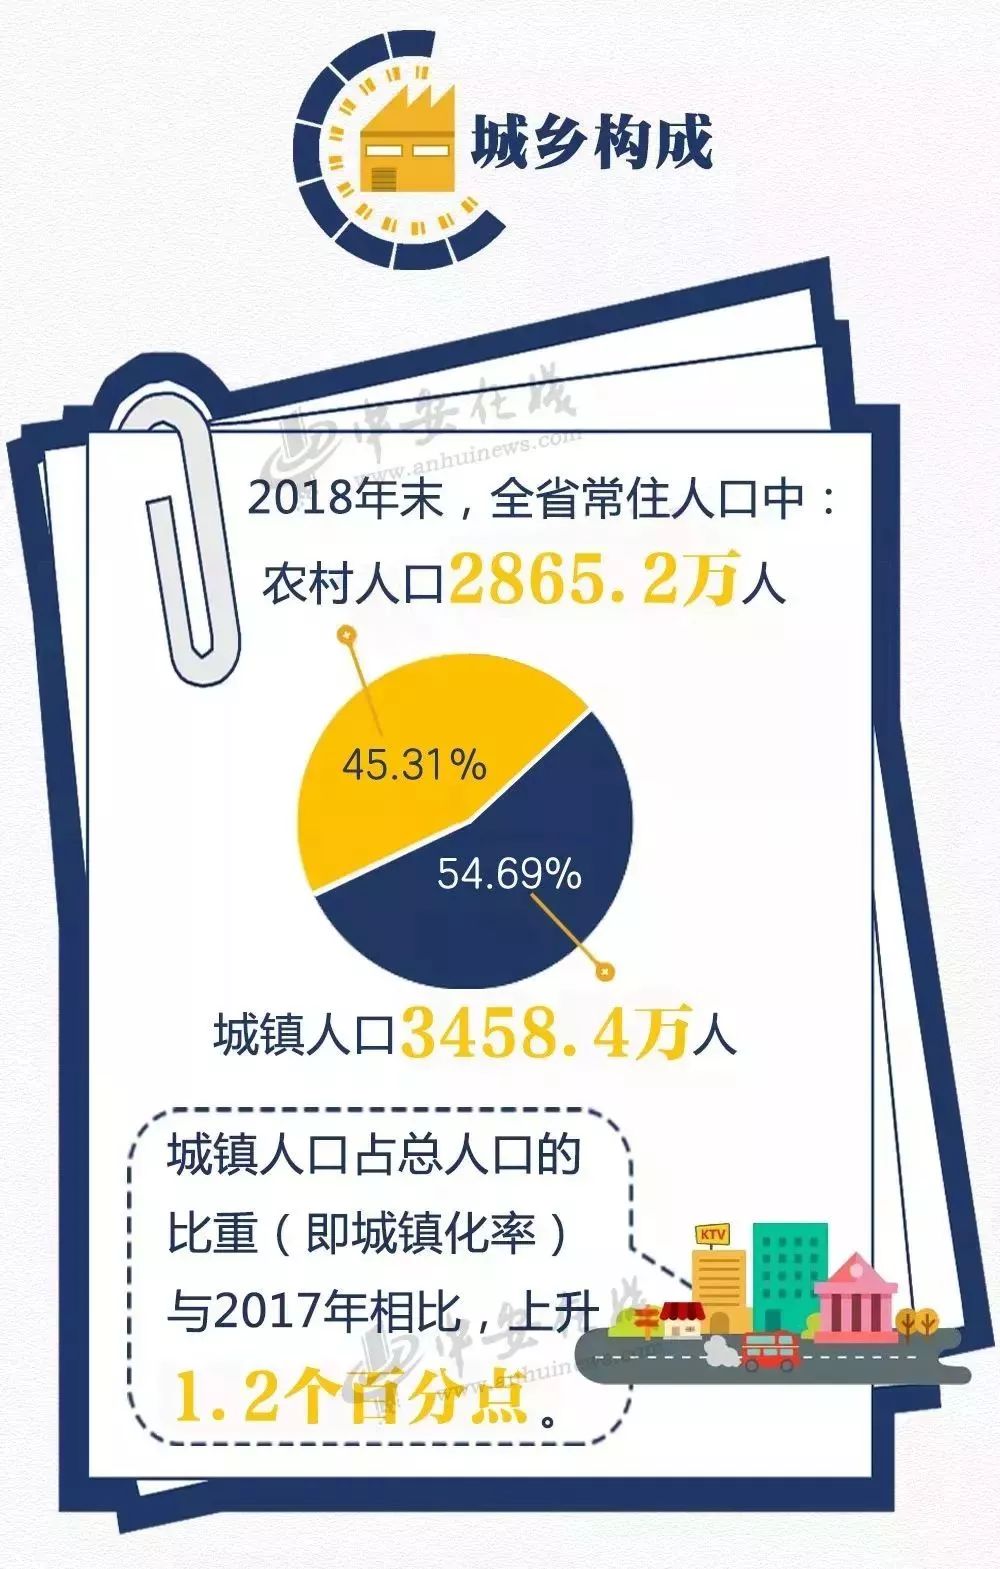 2018年安徽人口数据出炉,芜湖人口有何变化?